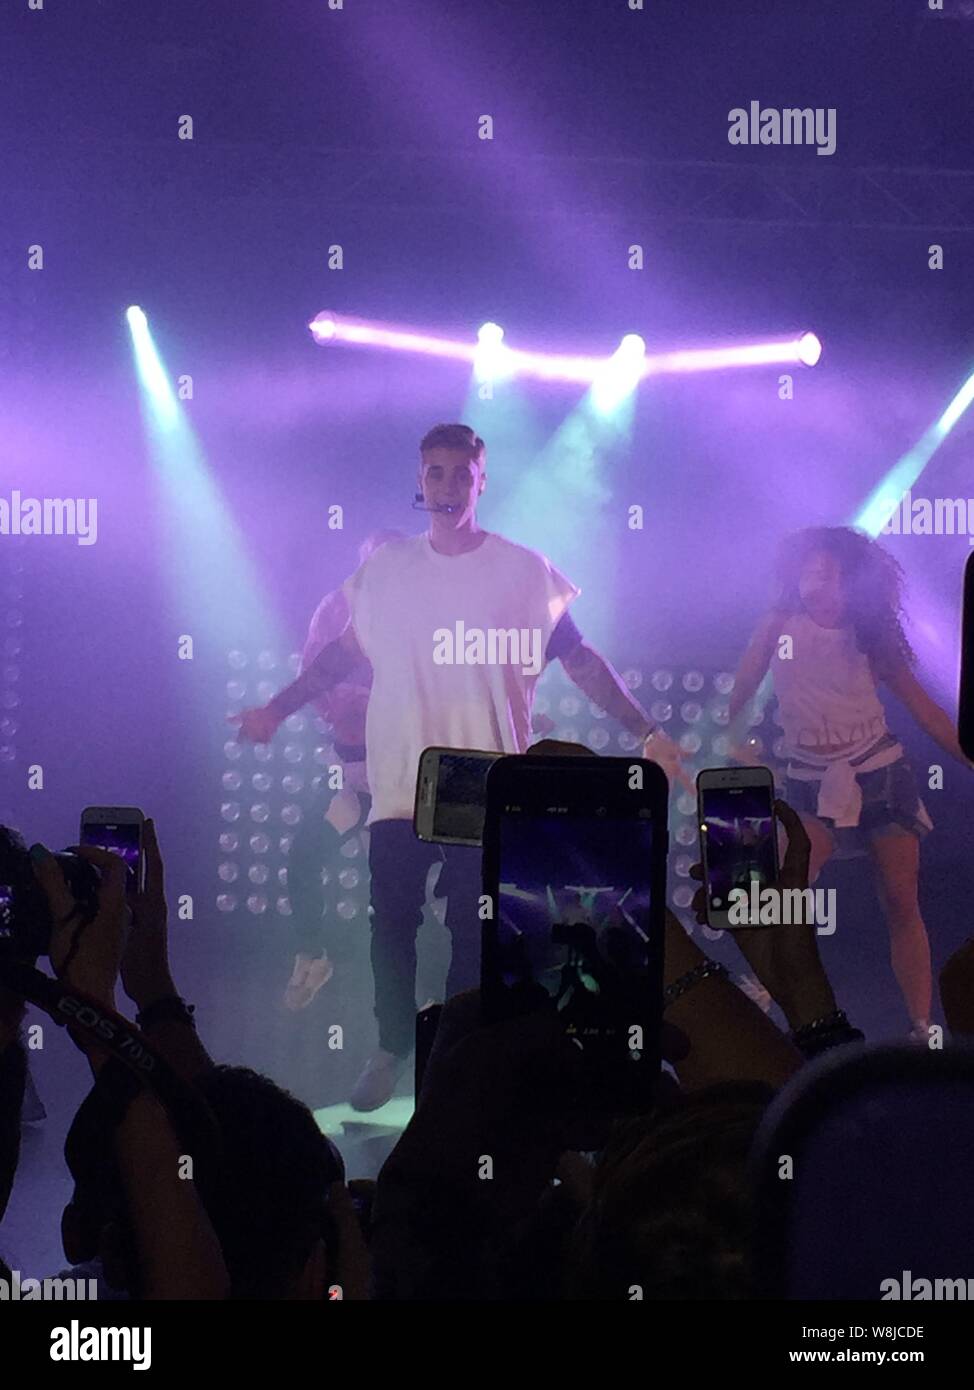 El cantante canadiense Justin Bieber realiza en un concierto durante el Festival de Música de Calvin Klein Jeans en Hong Kong, China, 11 de junio de 2015. Foto de stock